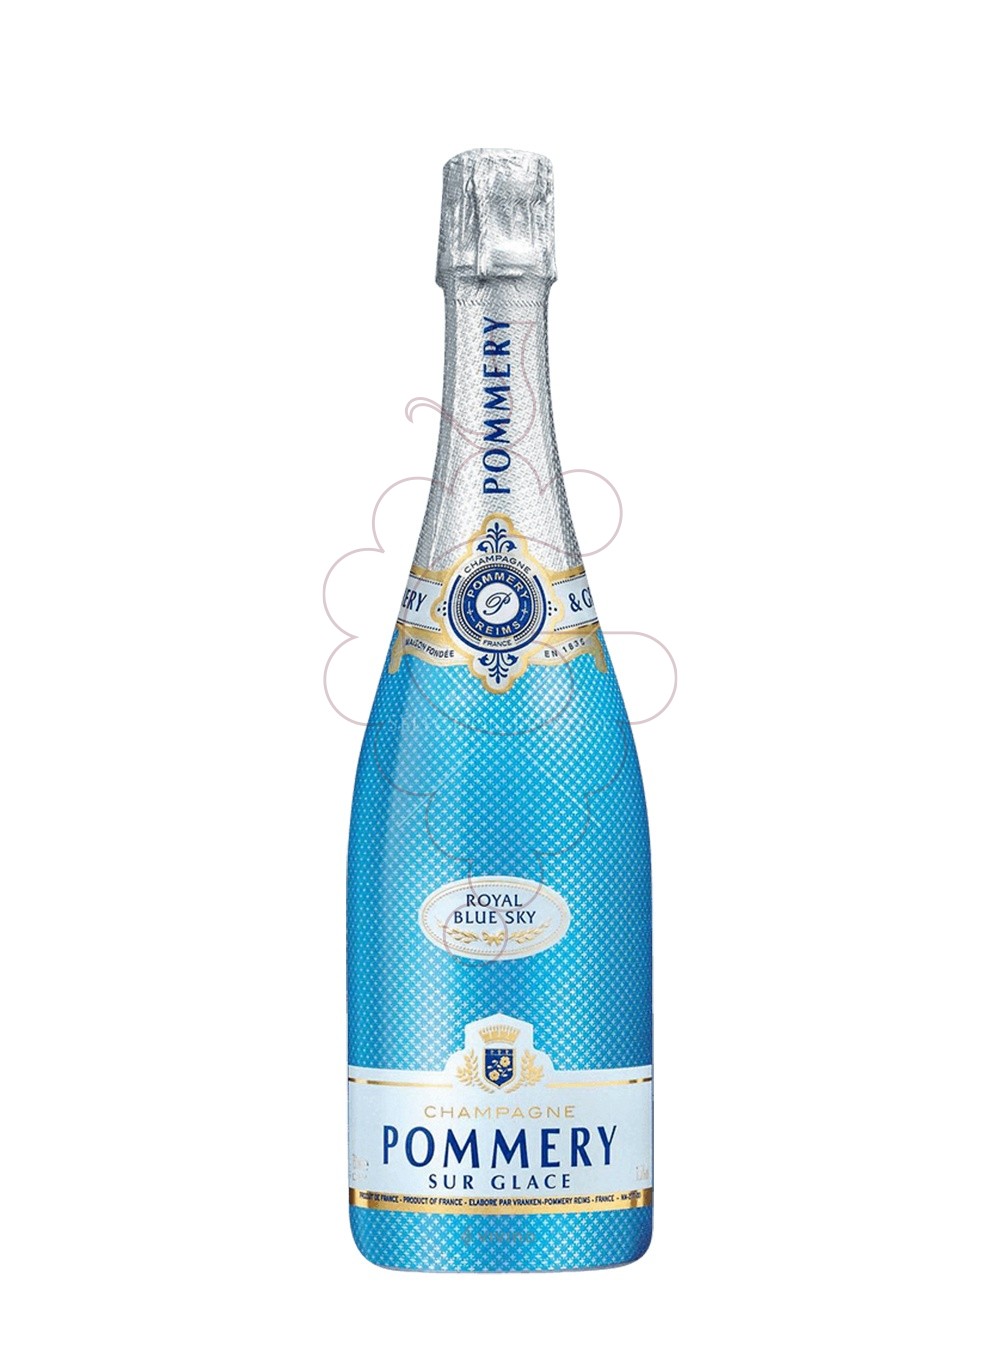 Photo Pommery sur glace blue sky sparkling wine